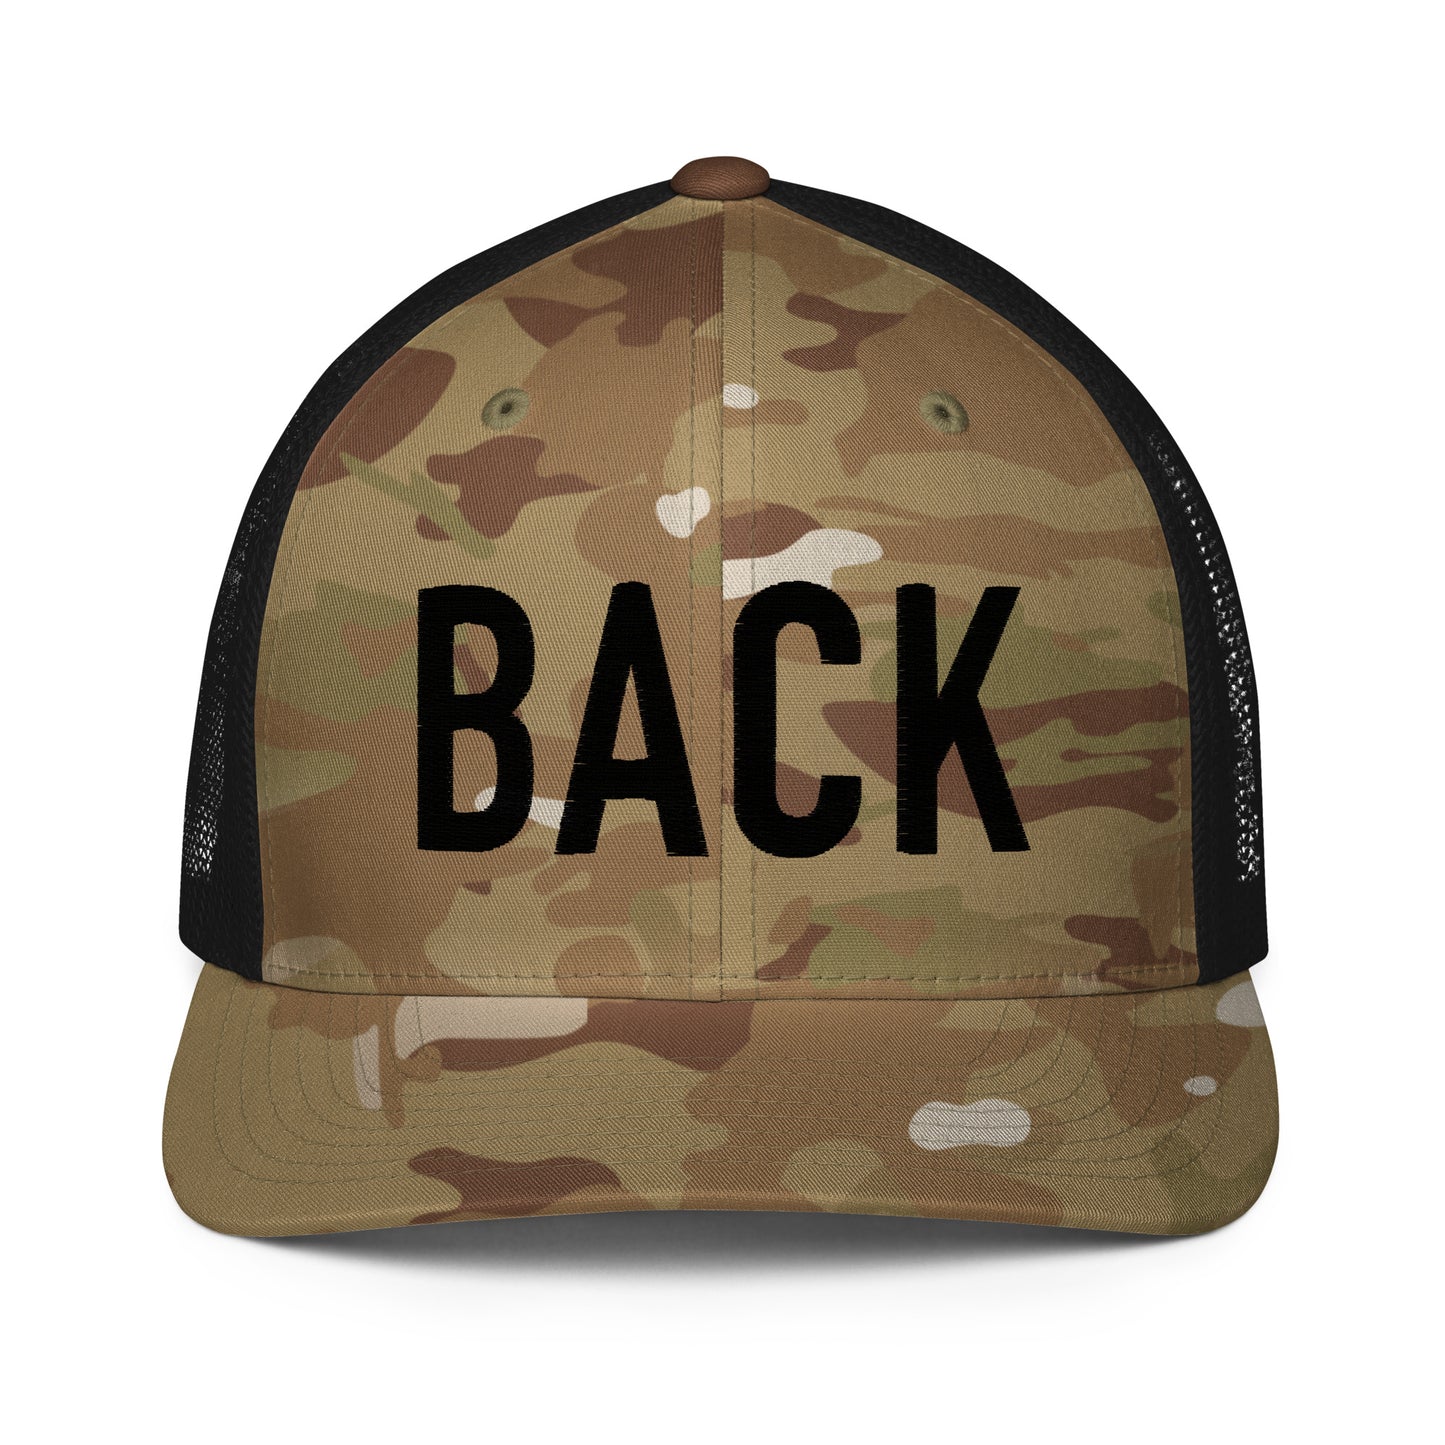 BACK Flexfit Trucker Hat